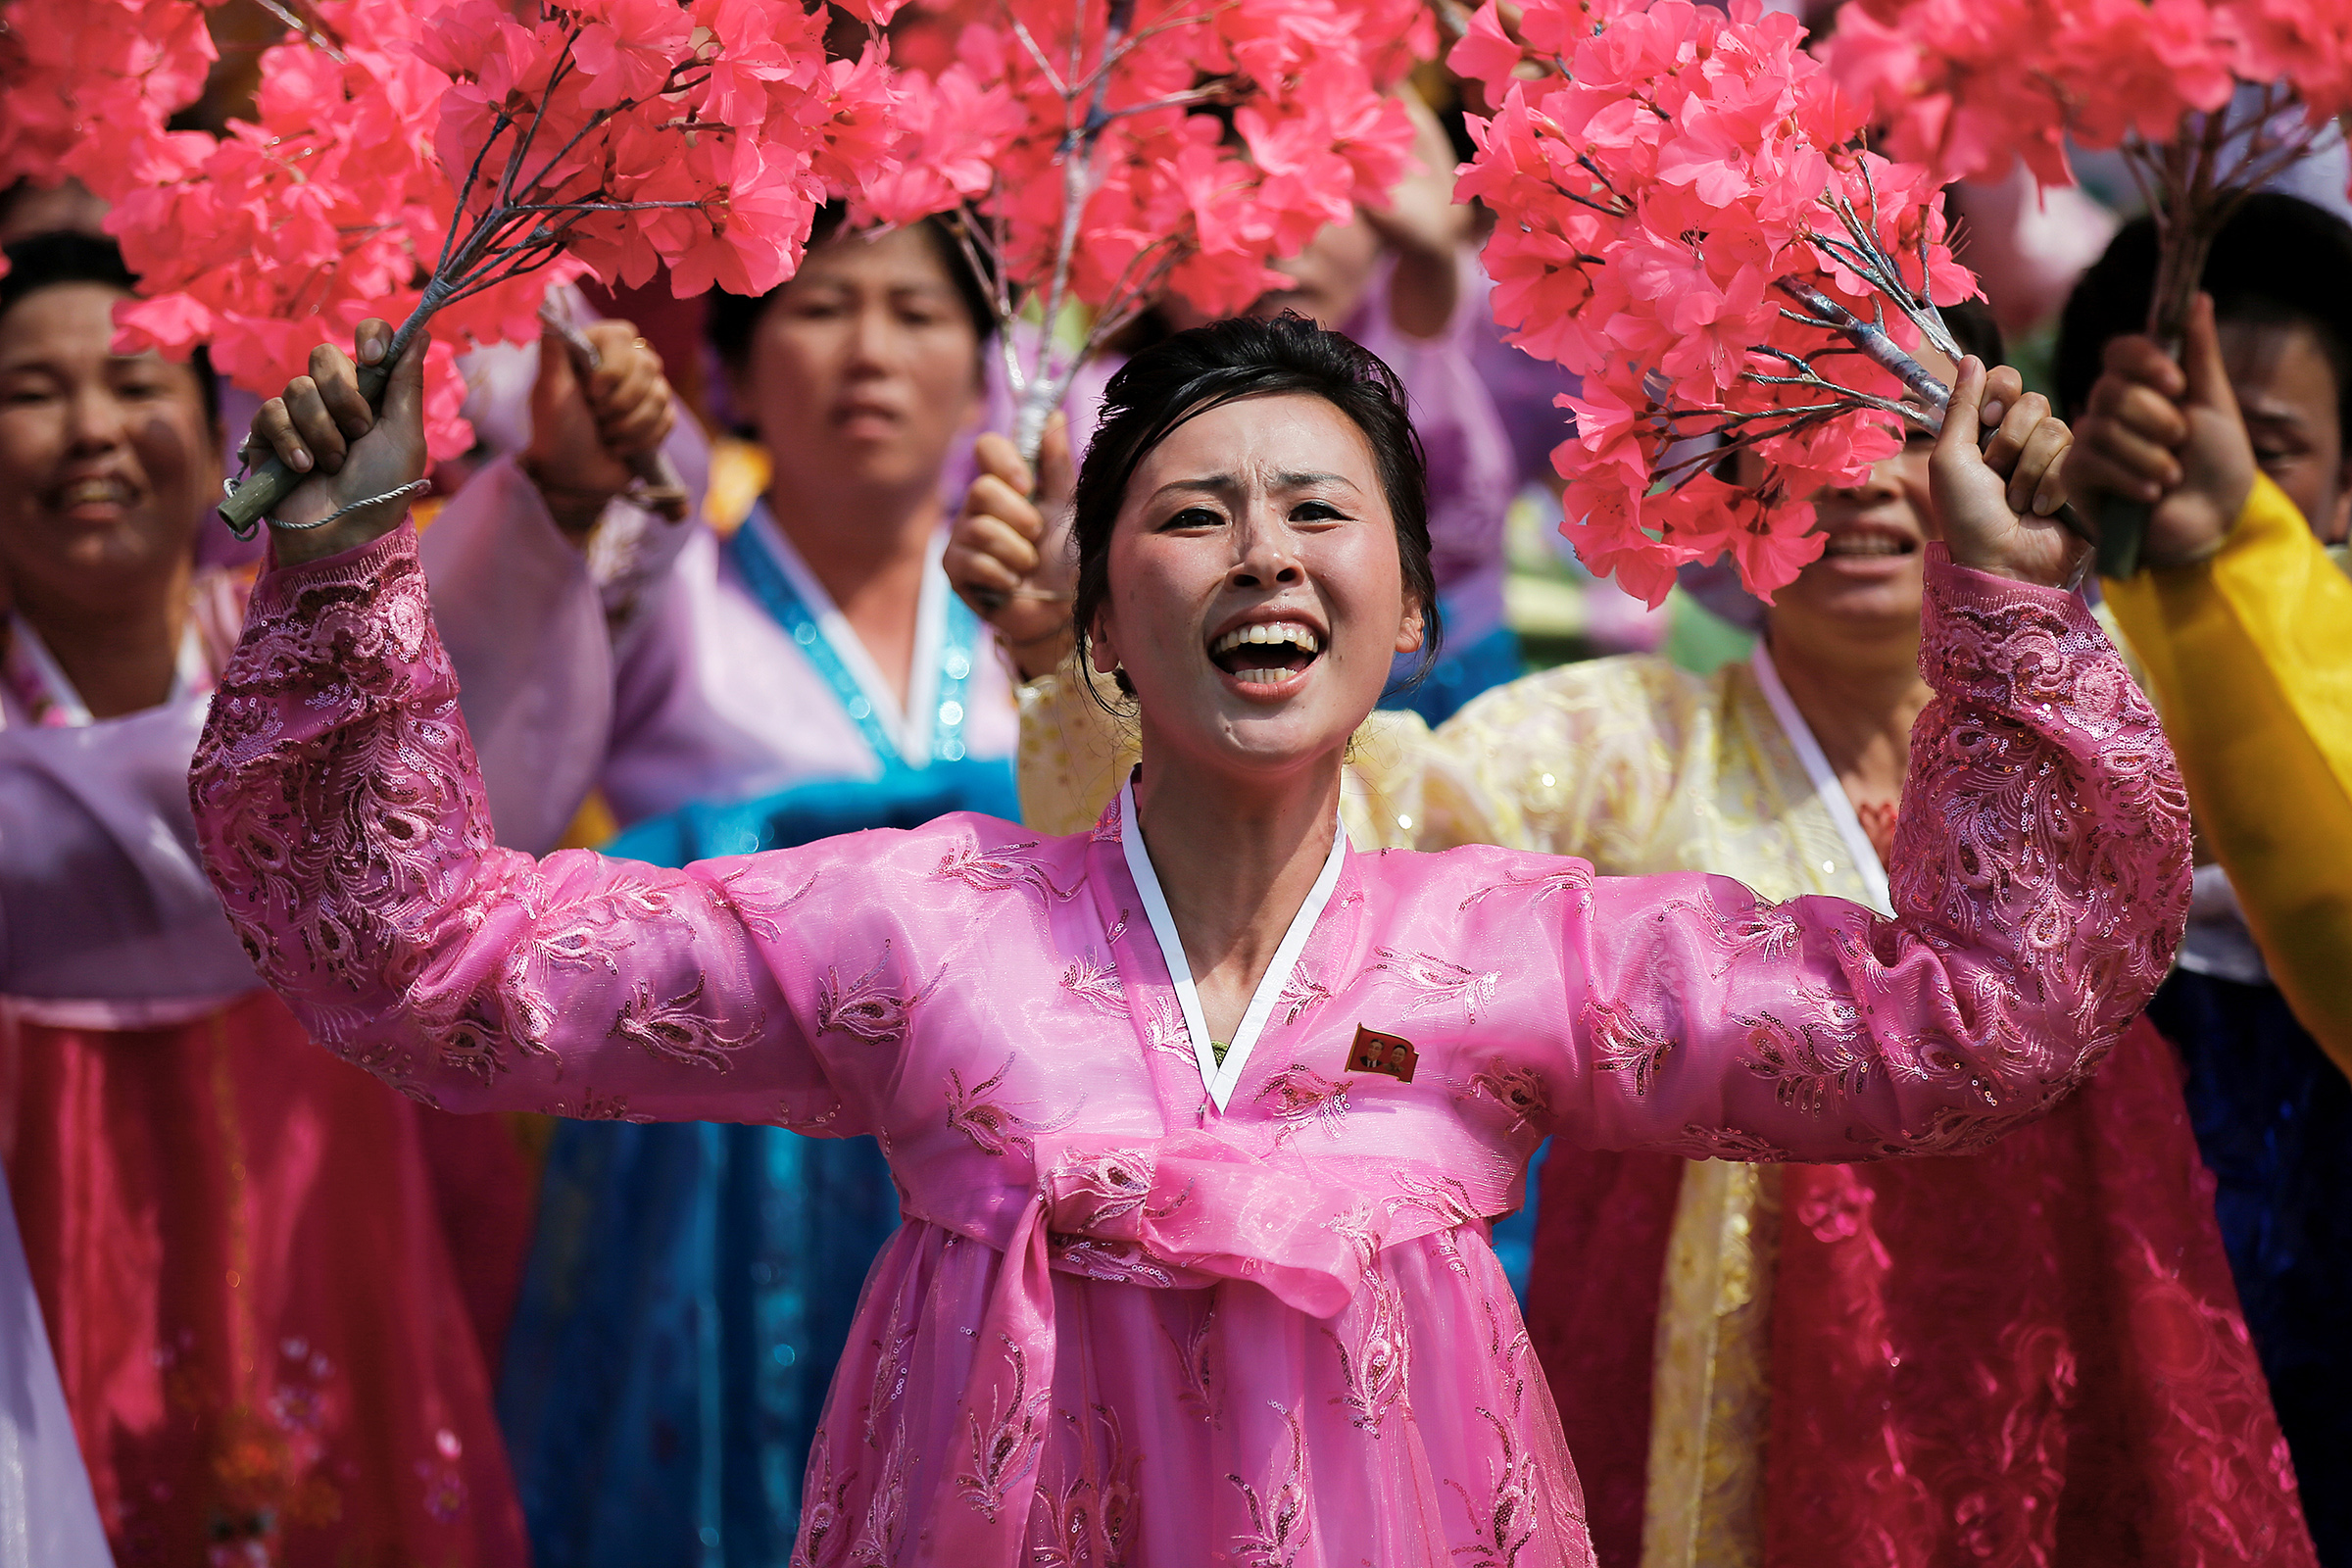 Во время гражданского&nbsp;парада в Пхеньяне на улицах&nbsp;можно увидеть людей не в серой строгой одежде, а в ярких национальных костюмах.
